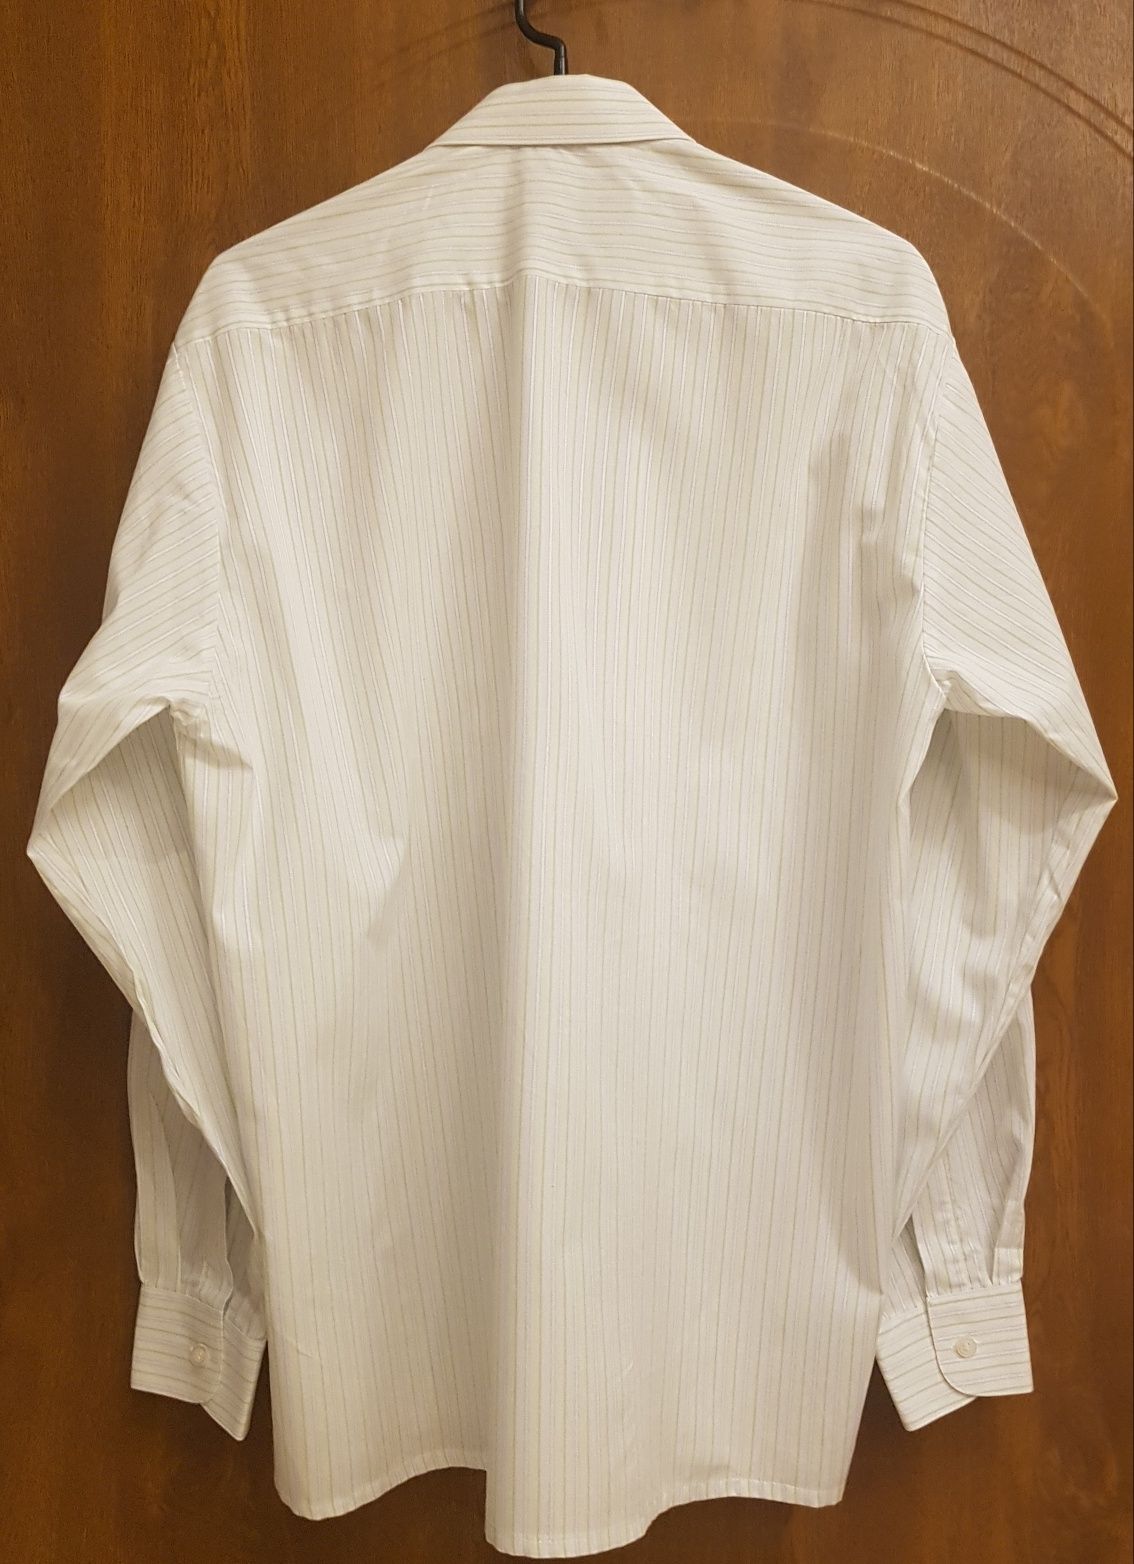 Koszula męska marki Hektor w roz. 40/176, biała w paseczki